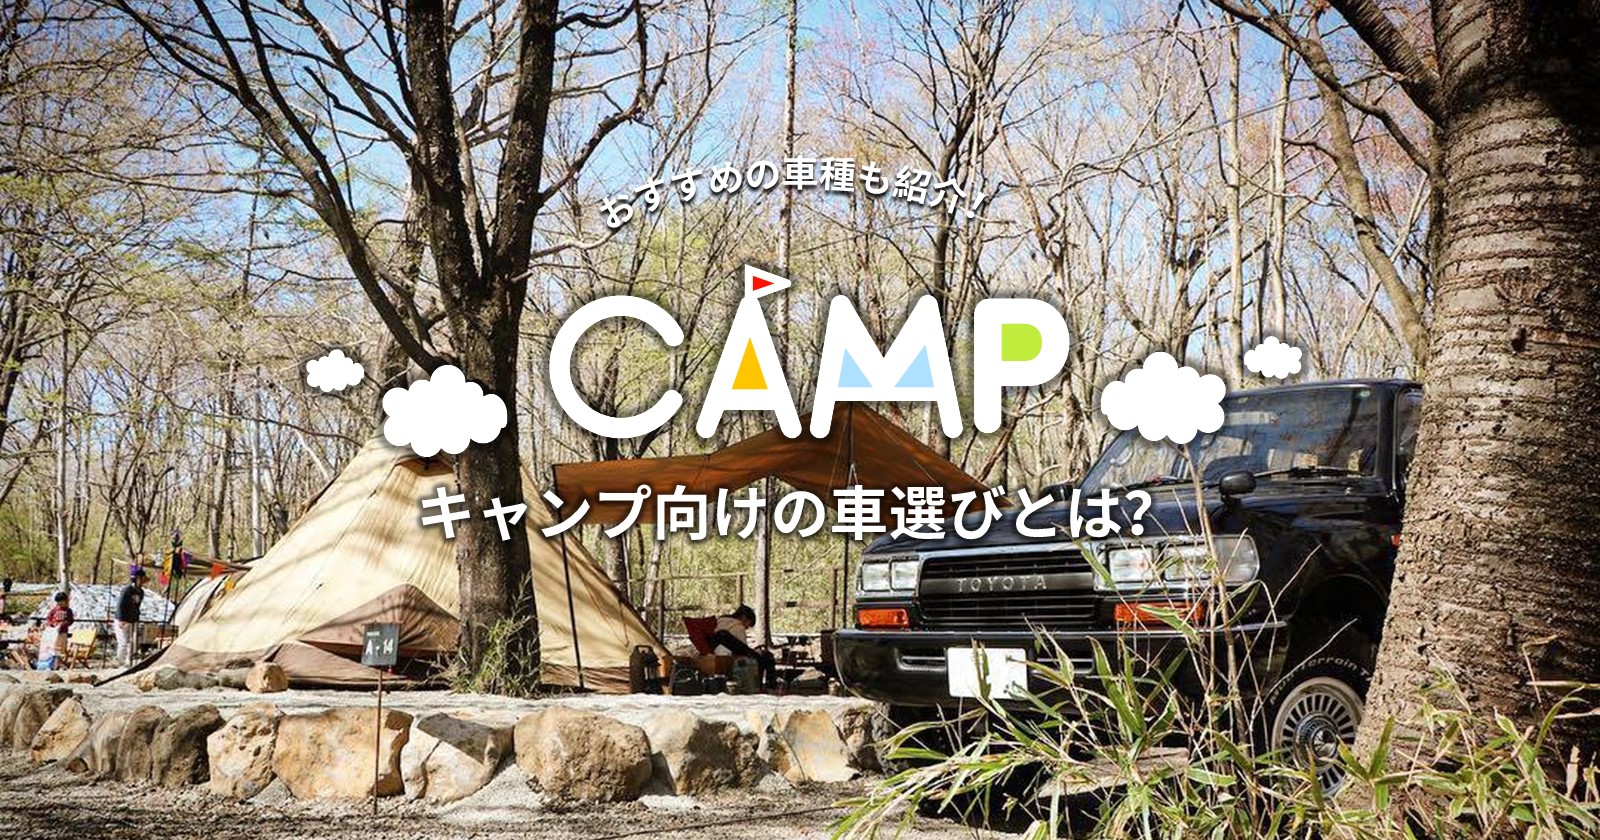 キャンプ向けの車の選び方とは おすすめの車種も紹介 Takibi タキビ キャンプ アウトドアの総合情報サイト